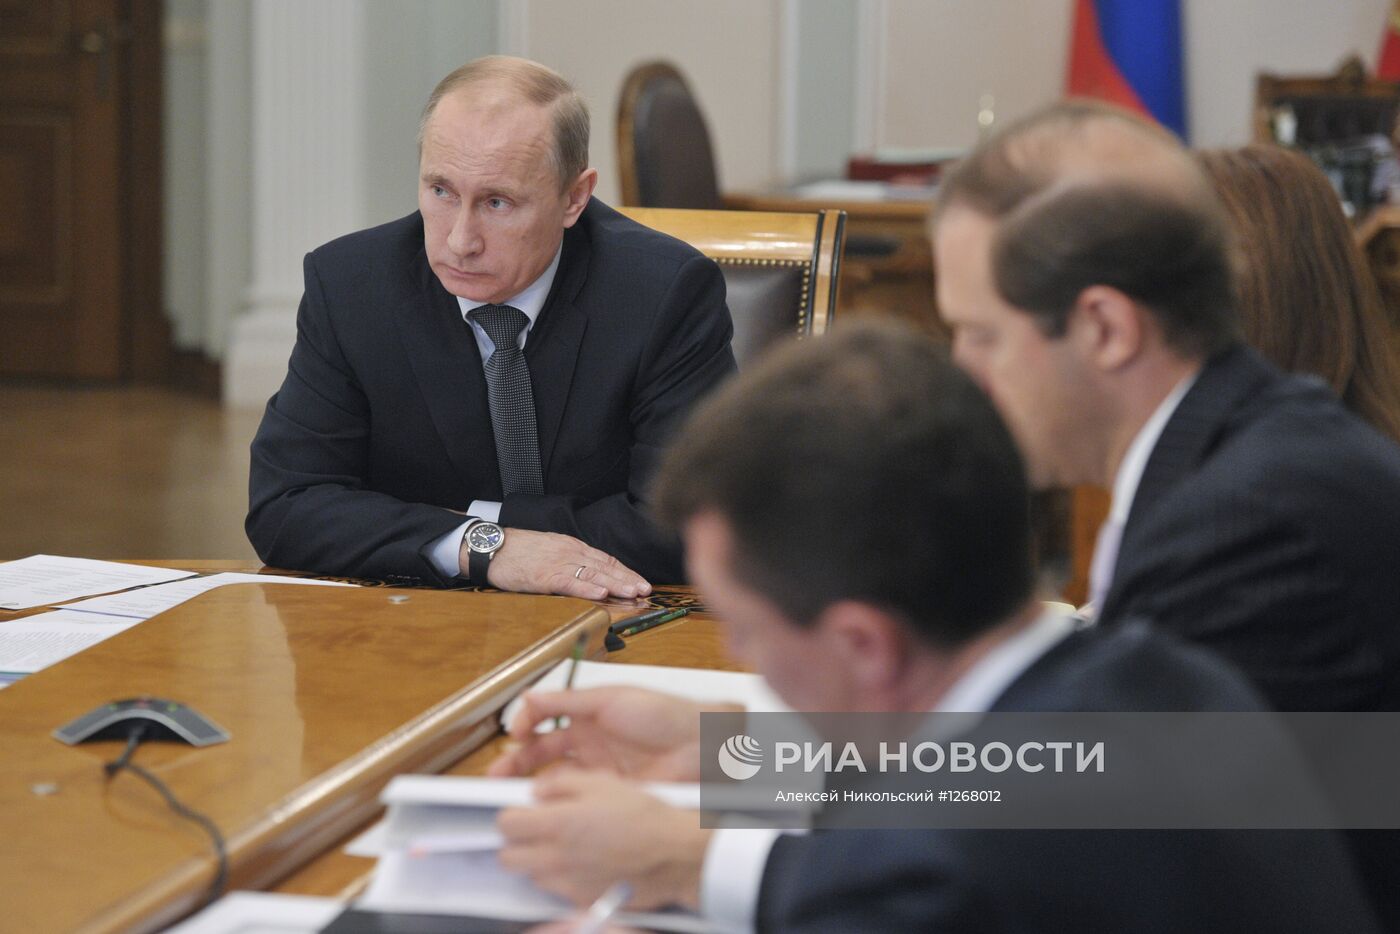 Владимир Путин проводит совещание в Ново-Огарево